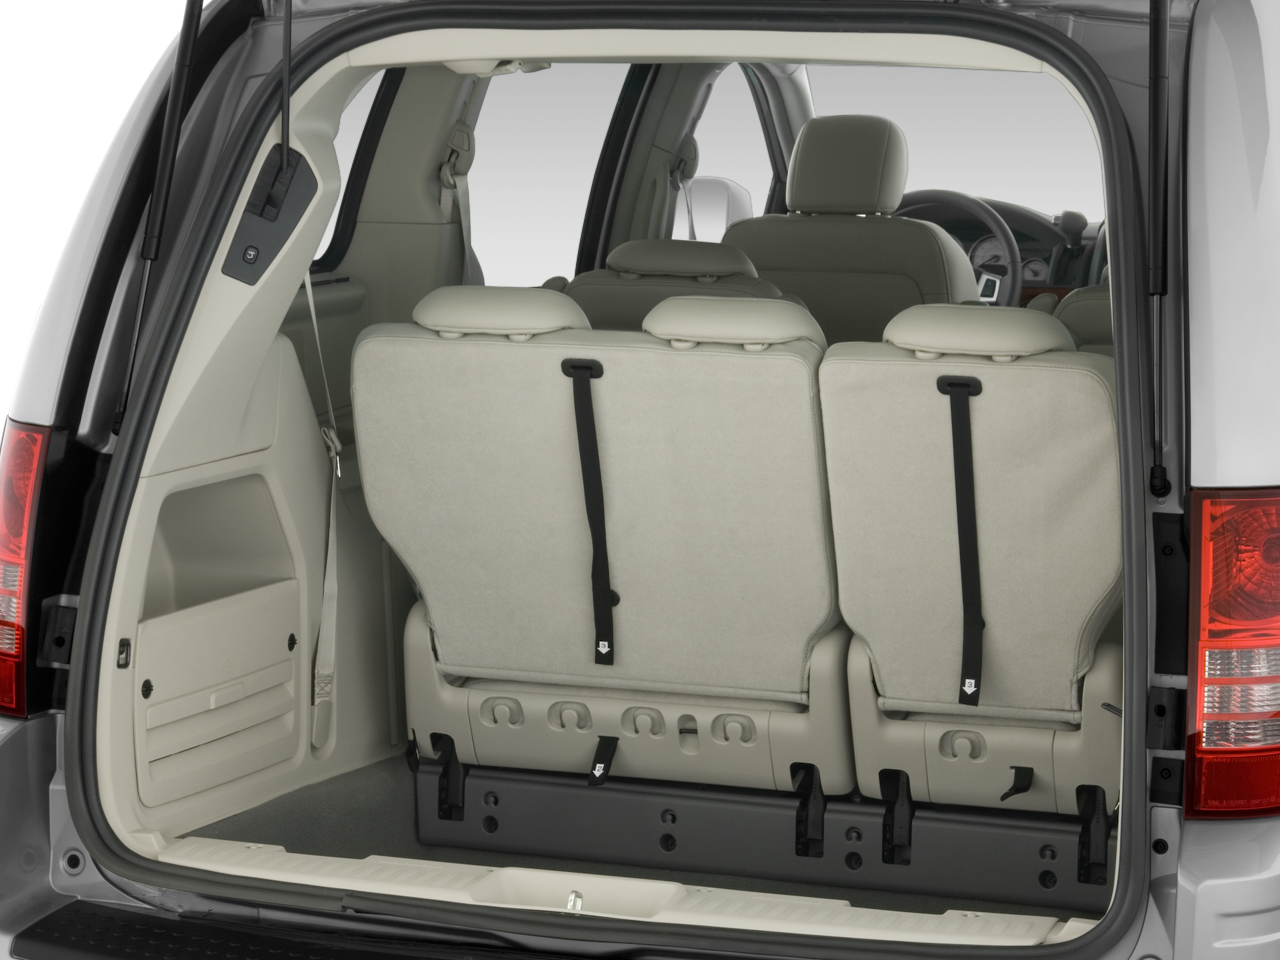 Chrysler Town & Country V 2007 - 2010 Minivan :: OUTSTANDING CARS